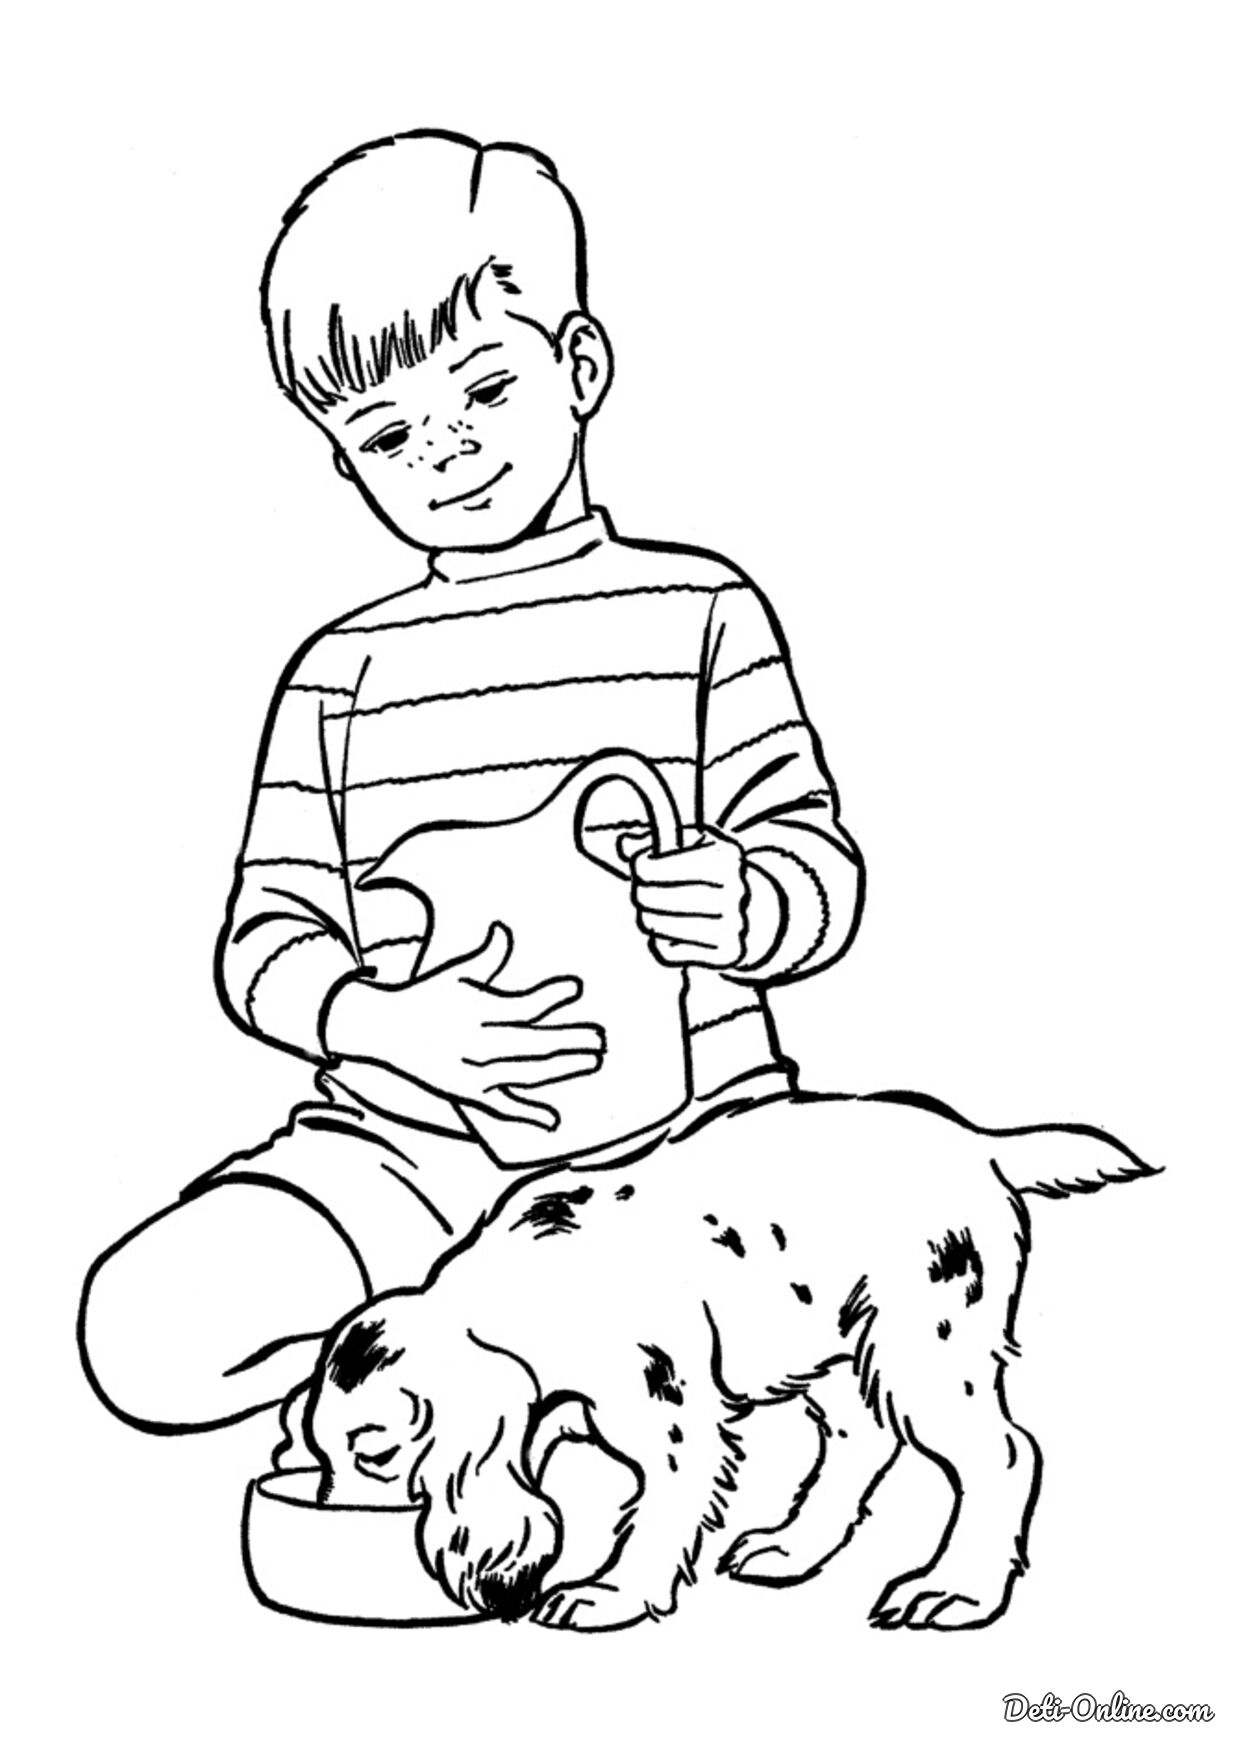 Рисунок мальчика раскраска для детей